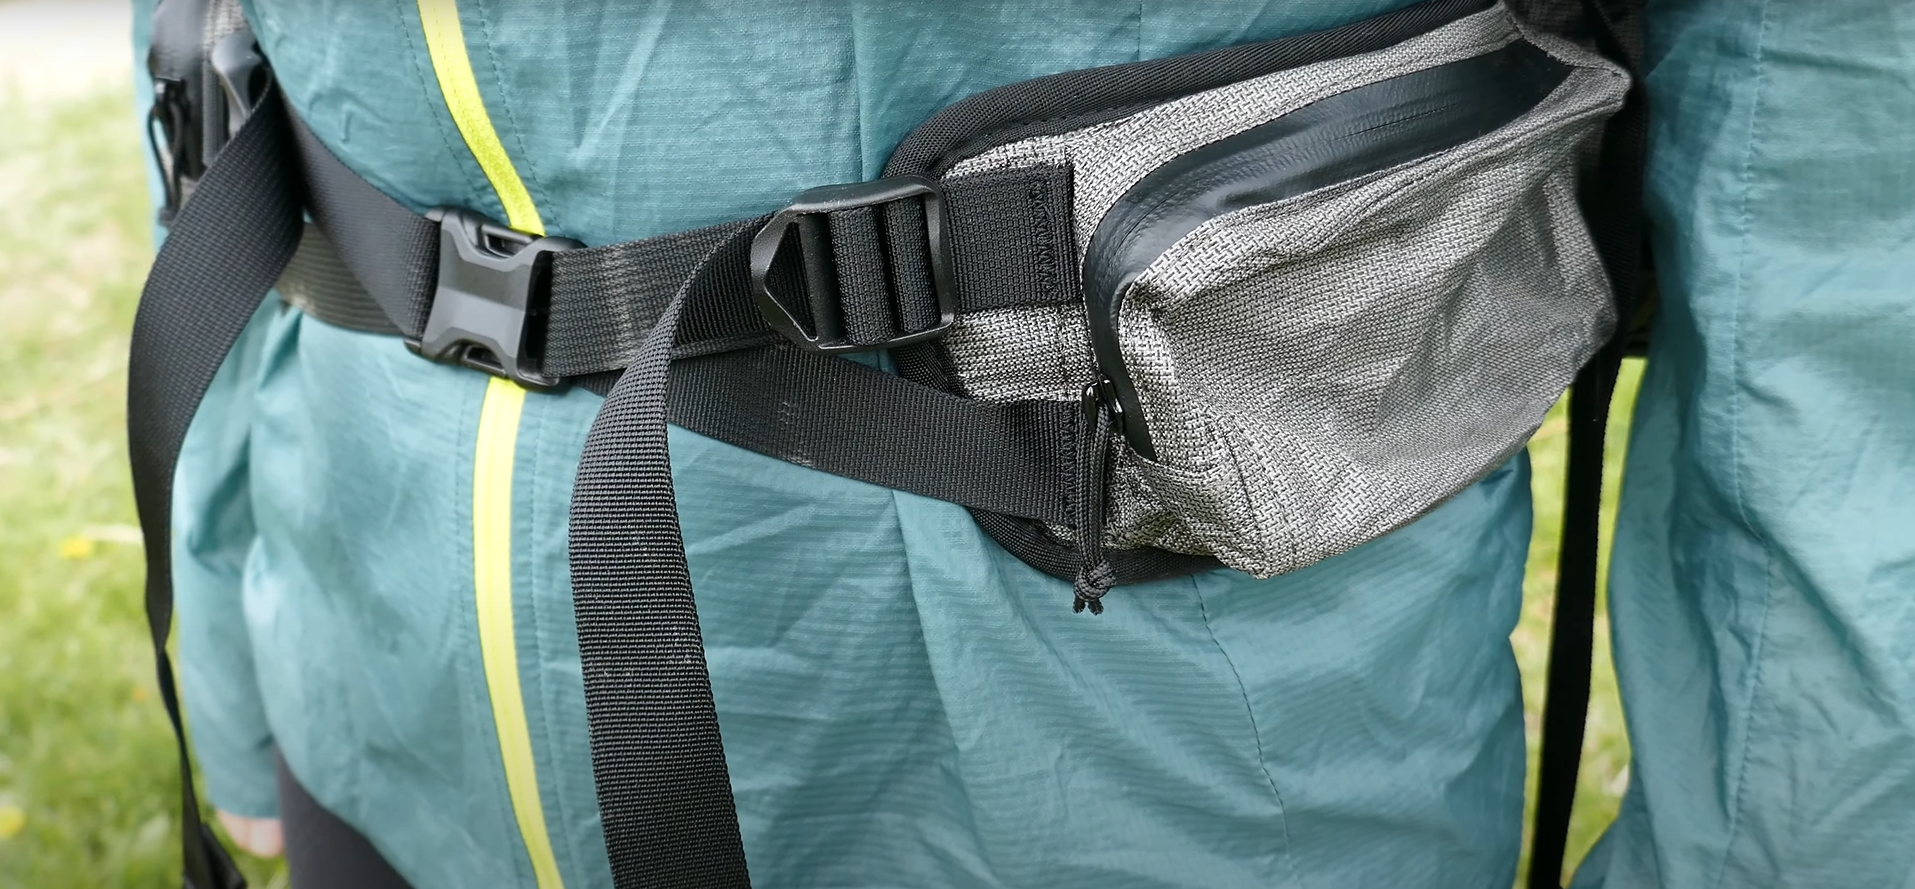 Dan Durston Gear Kakwa 40 Ultralight Backpack load carrying reverse pull YKK AquaGuard zippers